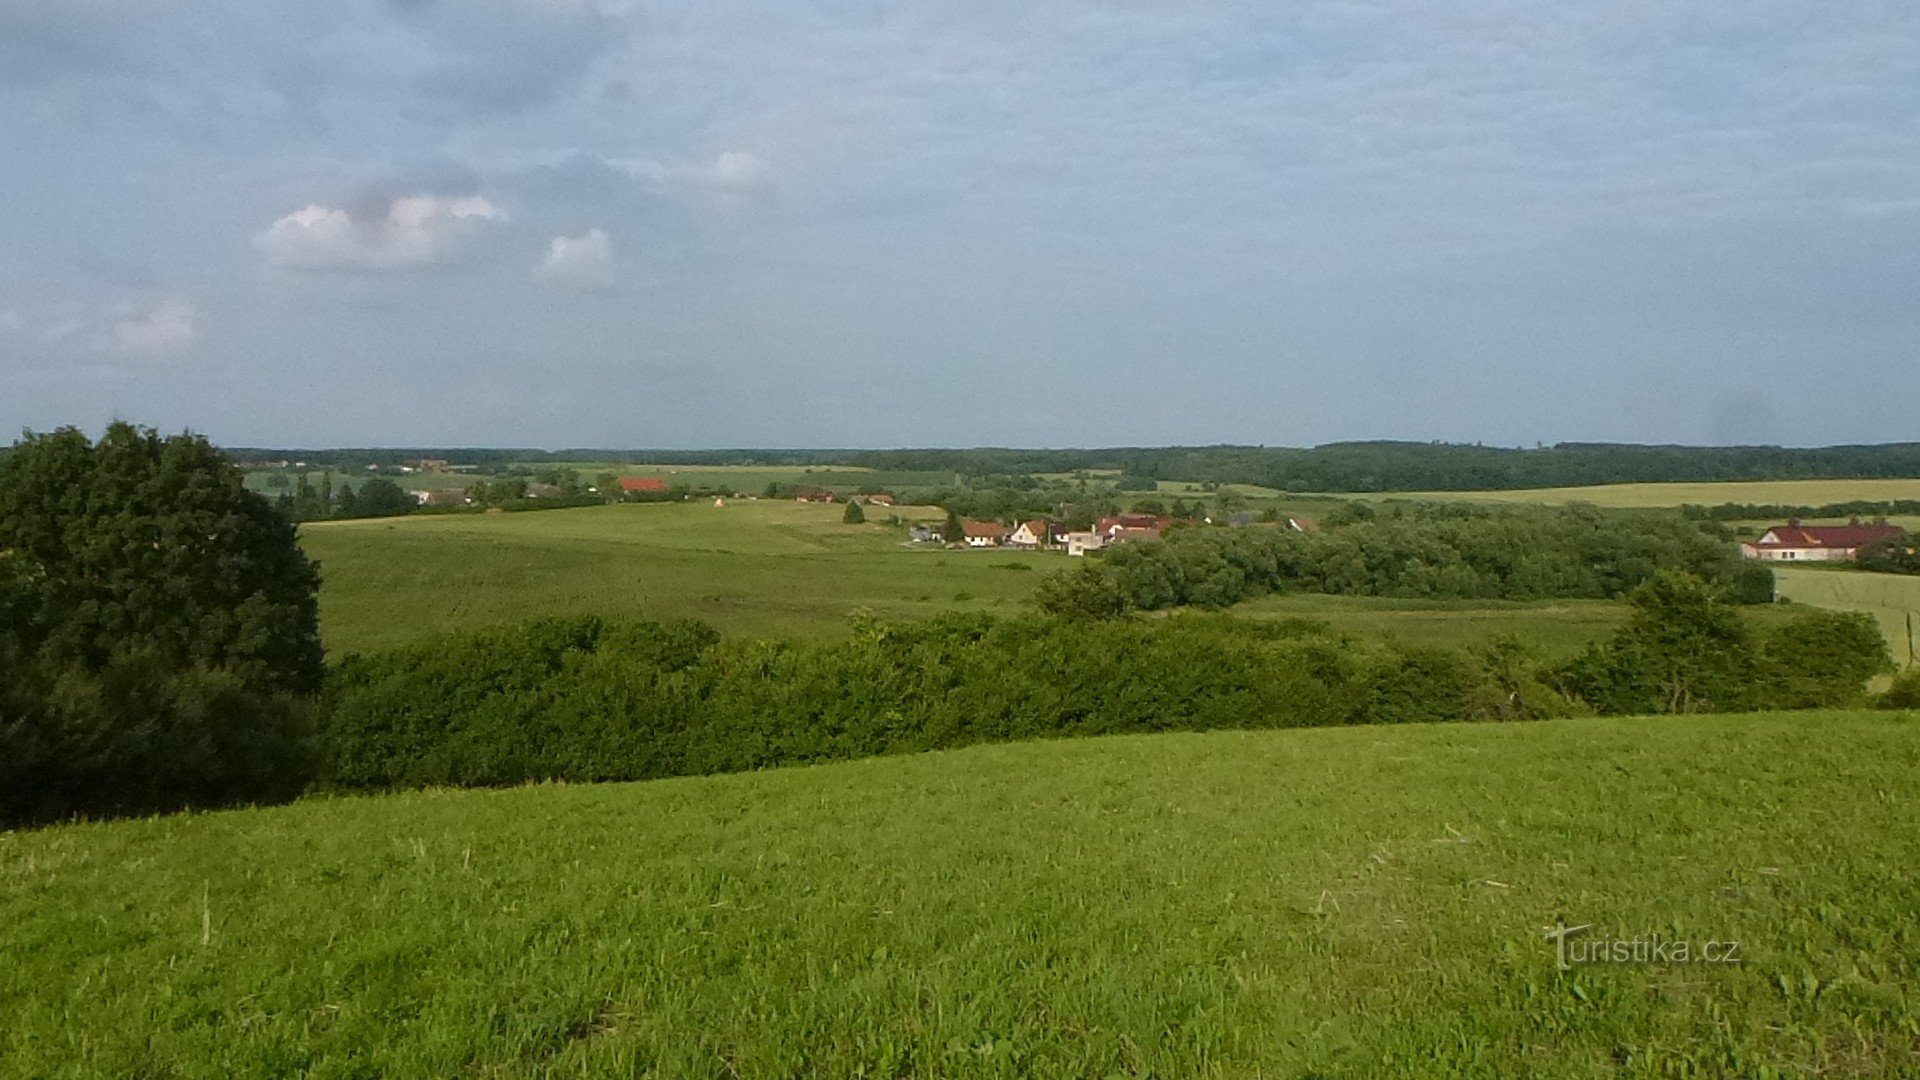 Nous avons Štěpánov dans la paume de nos mains, à l'horizon au-dessus du village je peux distinguer les bâtiments de Horecký d